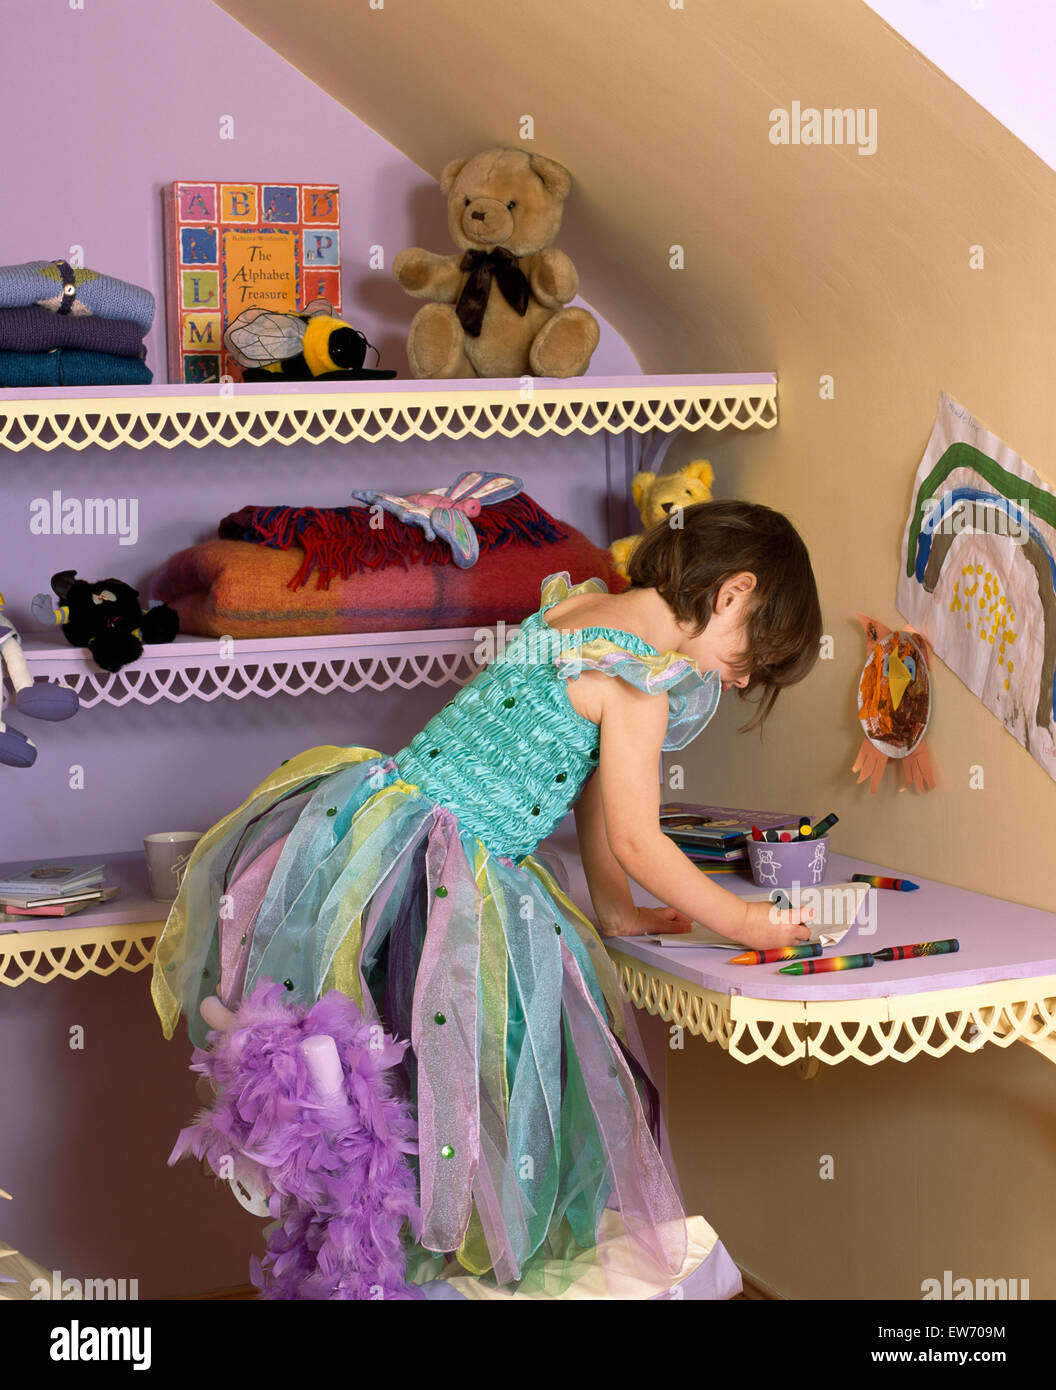 Petite fille portant un costume de fée et s'appuyant sur un plateau festonné Banque D'Images